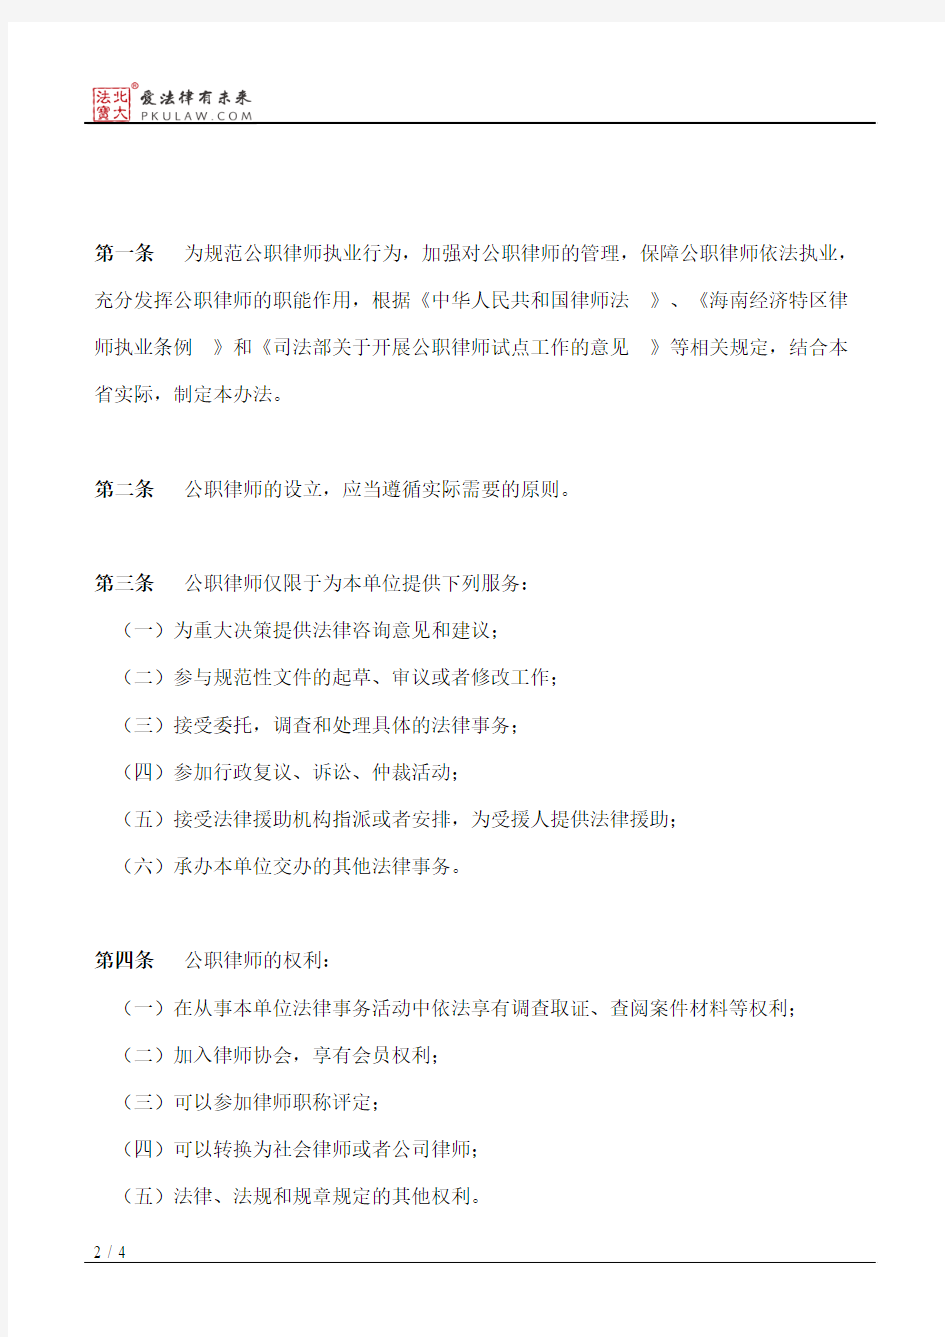 海南省人民政府办公厅关于印发海南省公职律师管理暂行办法的通知